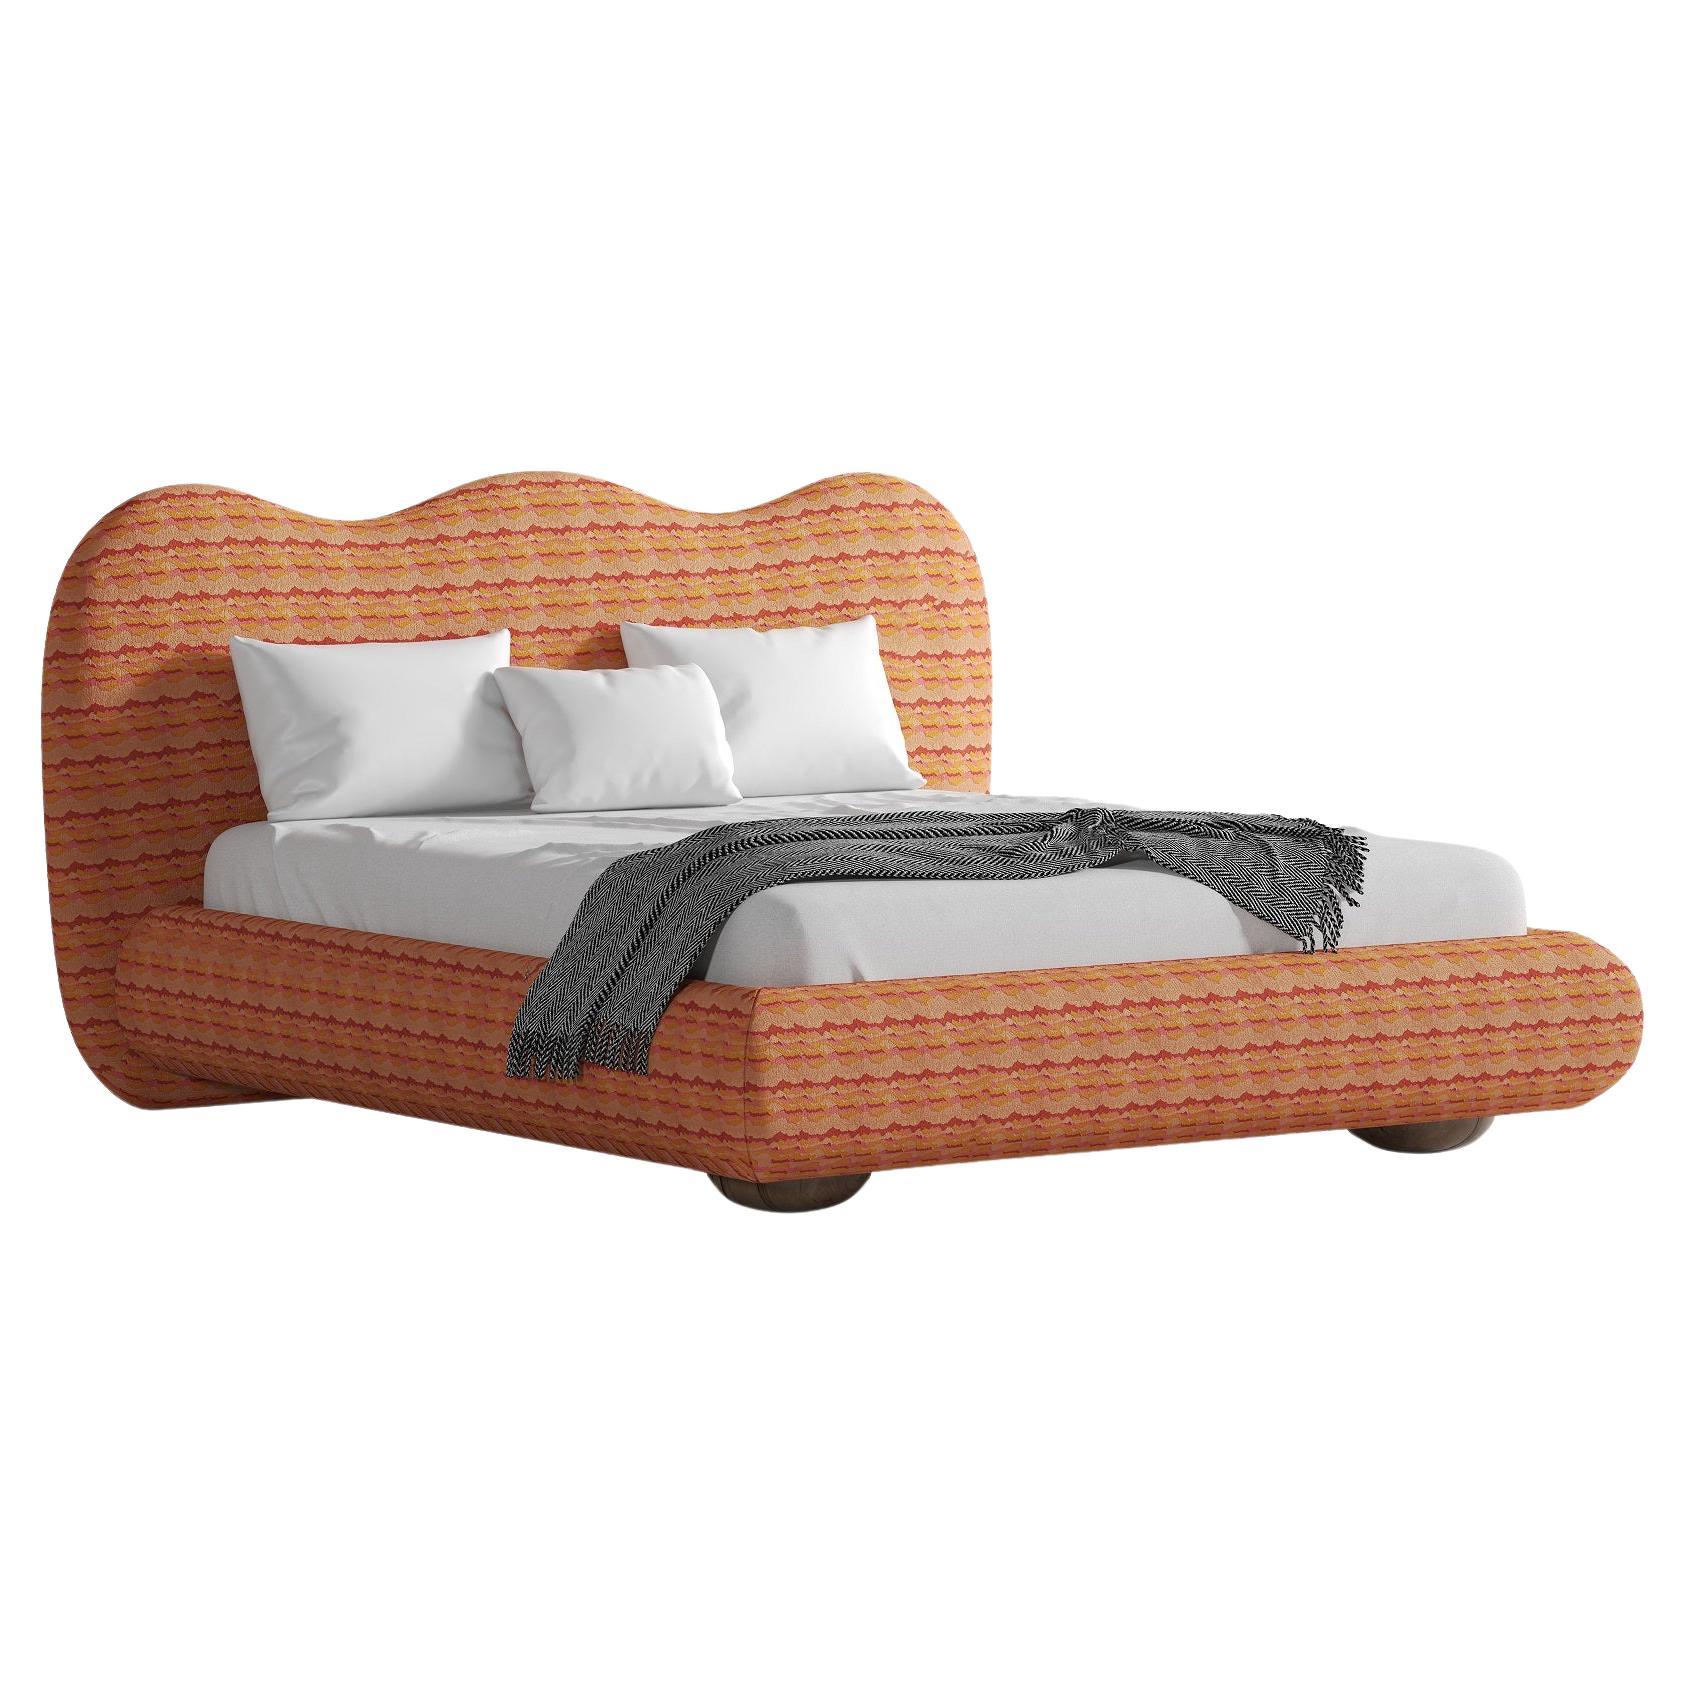 Dandy King Size-Bett in Königsgröße, angeboten in exklusivem Muster, 6 Farben im Angebot